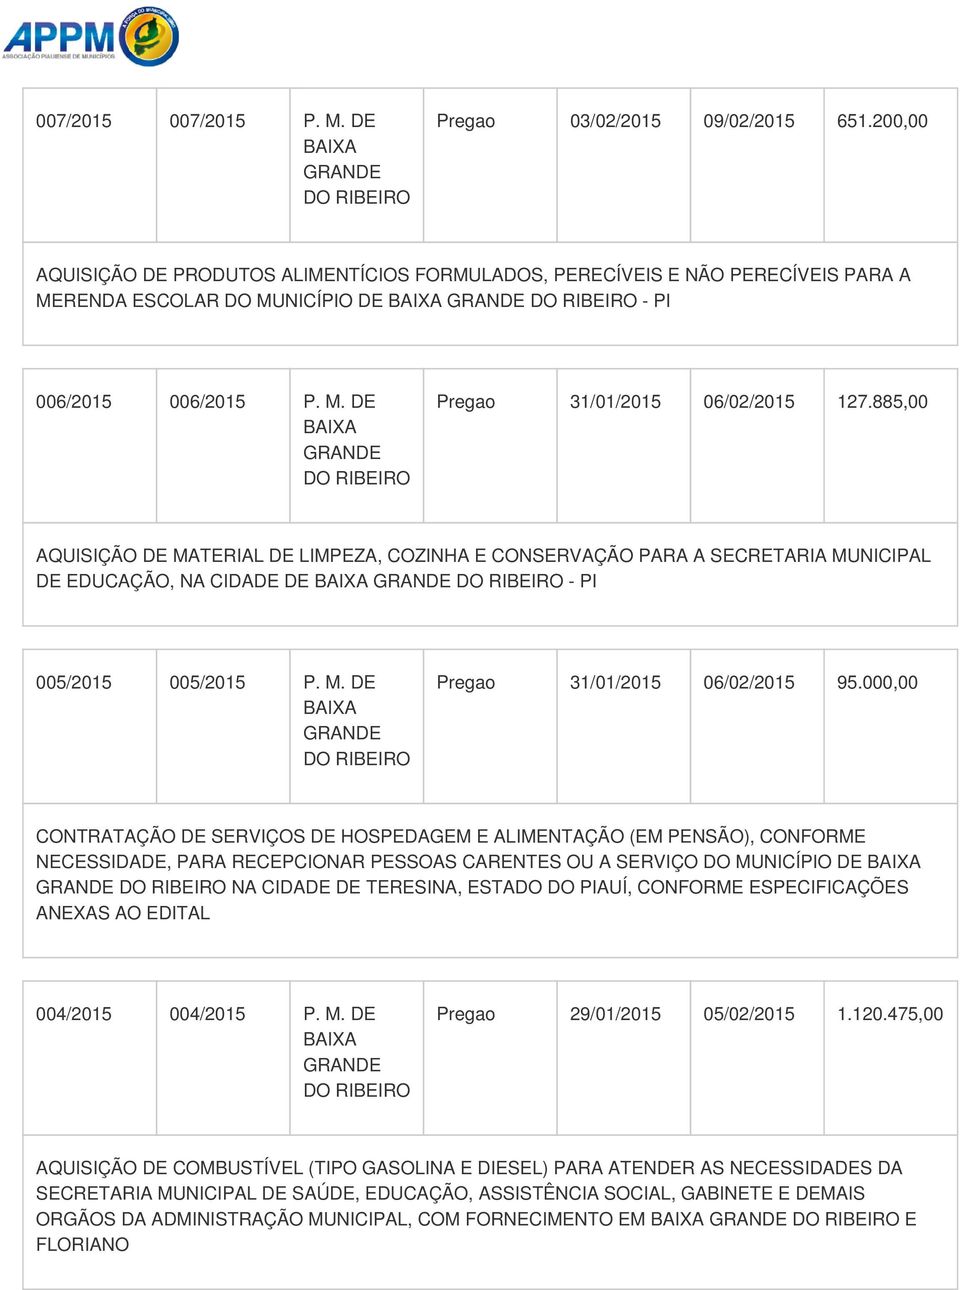 885,00 AQUISIÇÃO DE MATERIAL DE LIMPEZA, COZINHA E CONSERVAÇÃO PARA A SECRETARIA DE EDUCAÇÃO, NA CIDADE DE - PI 005/2015 005/2015 P. M. DE Pregao 31/01/2015 06/02/2015 95.